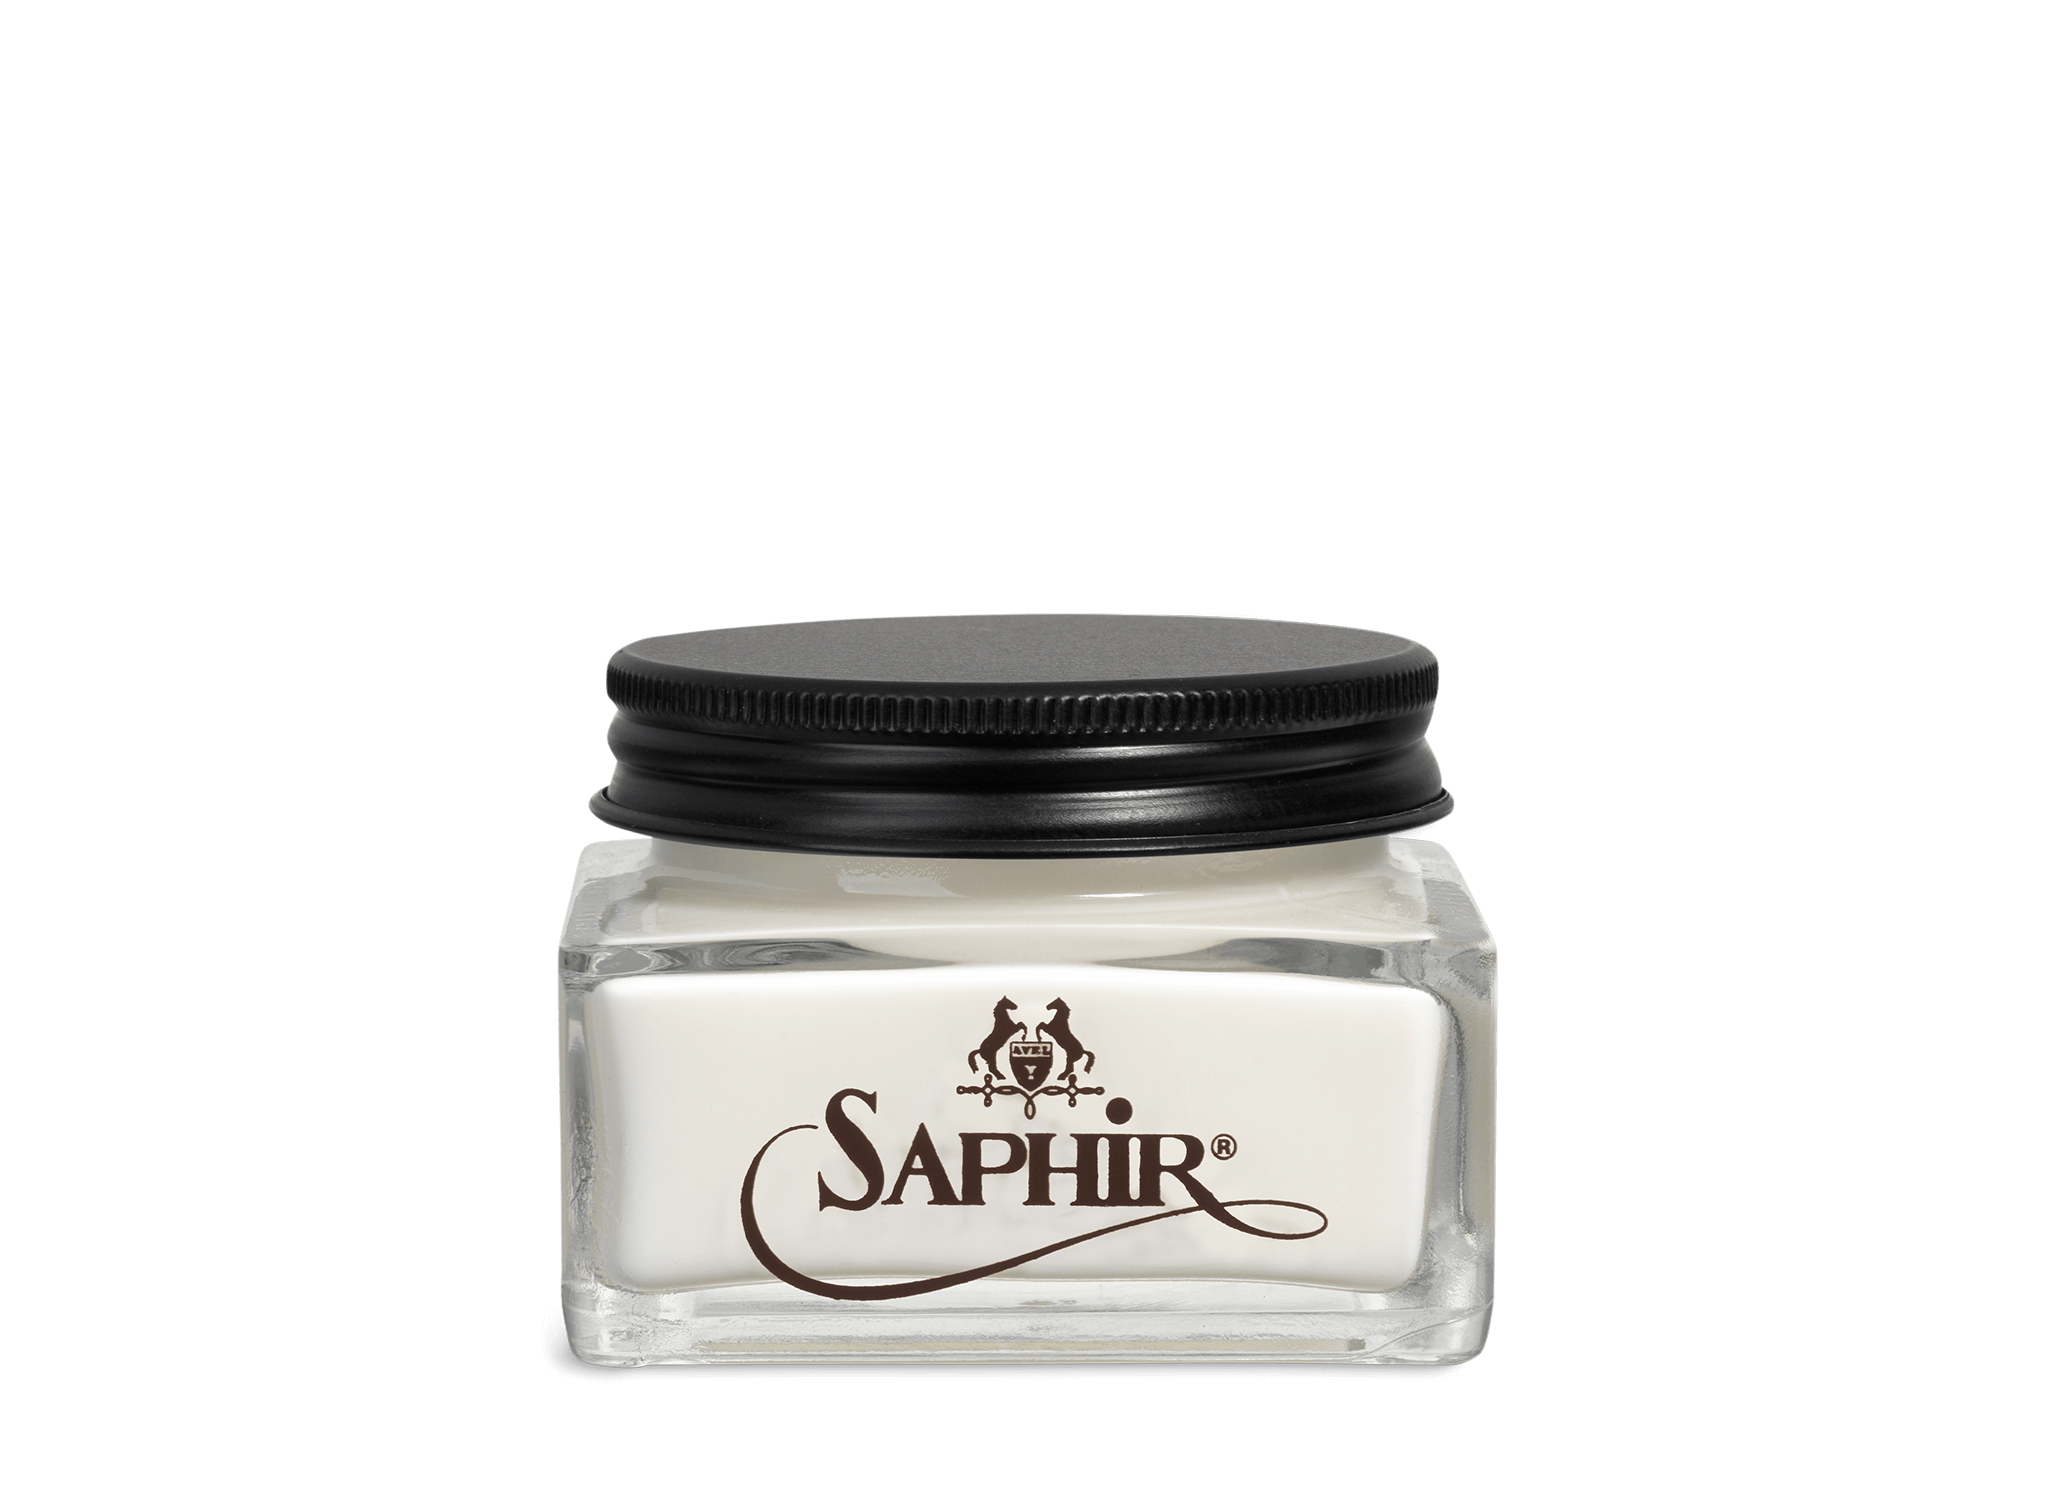 Saphir Beaute du Cuir Creme Renovatrice 25ml Pot